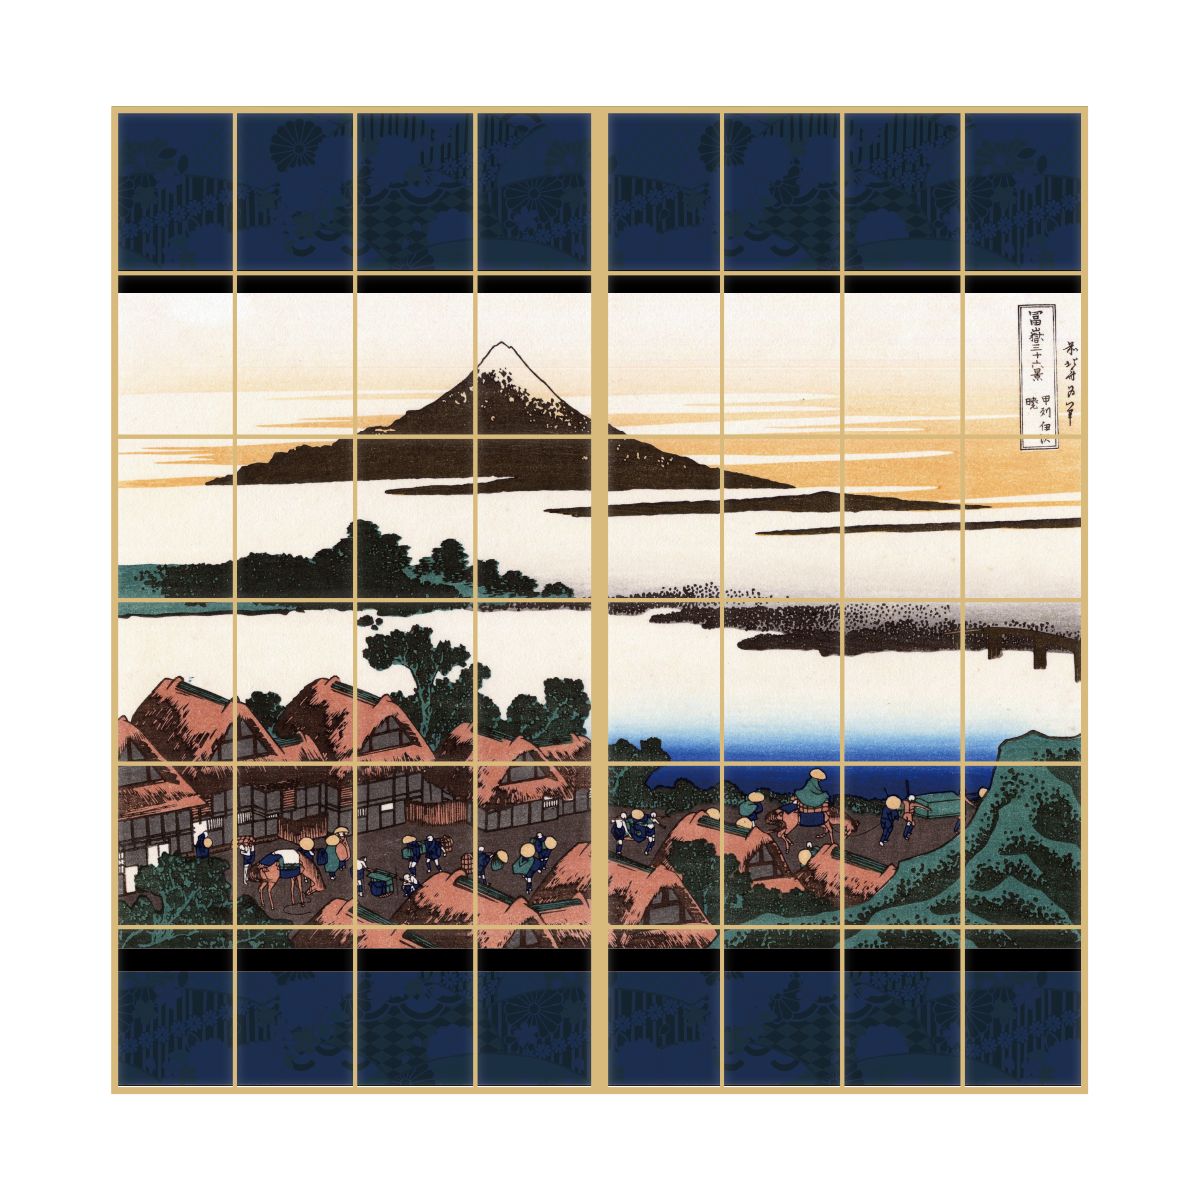 Shoji Paper Japanese Pattern Ukiyoe Katsushika Hokusai Koshu Izawa Akira 2 Sheets 1 Set Glue Type Width 91cm x Length 182cm Shoji Shoji Paper Shoji Modern Asahipen JPK-042S